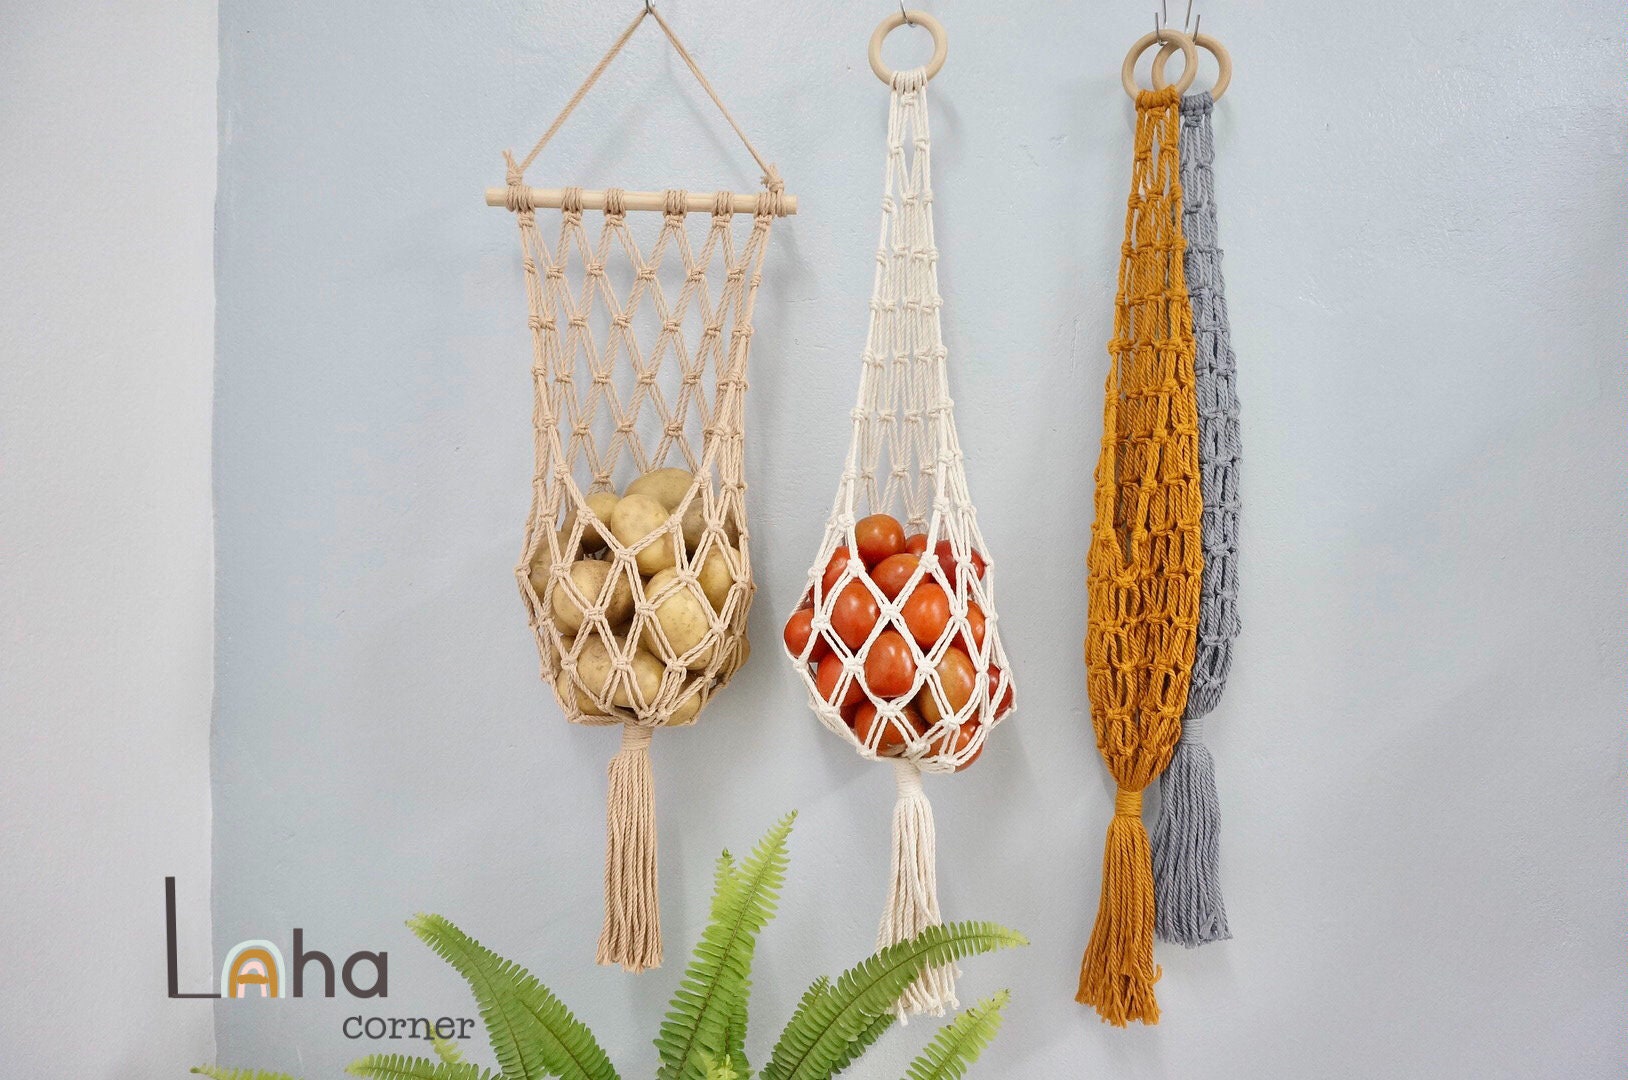 Monfince Handmade Woven Hanging Vegetable Fruit Basket Teardrop Shaped  Hanging Wall Basket Home Kitchen Storage Holder